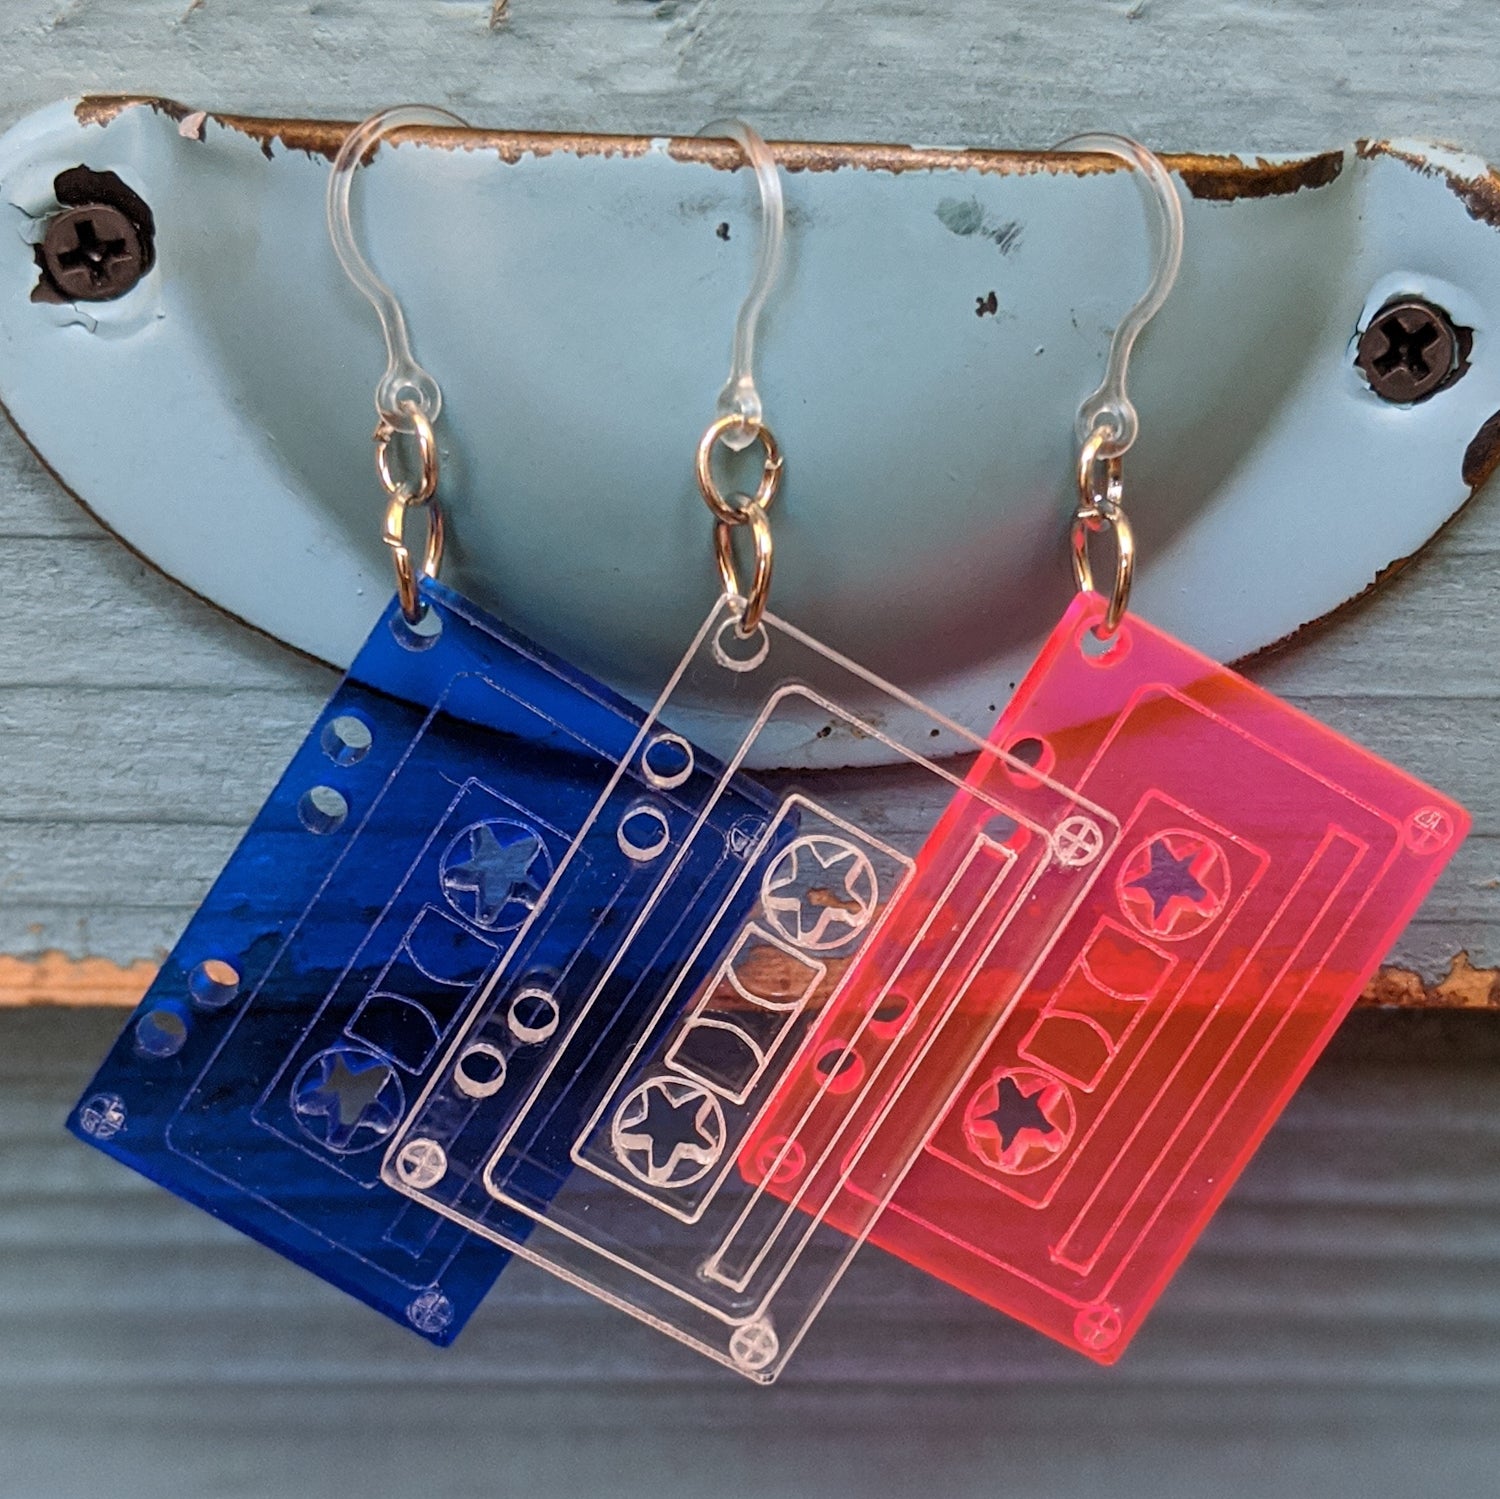 Cassette Tape Earrings (Dangles) - all colors